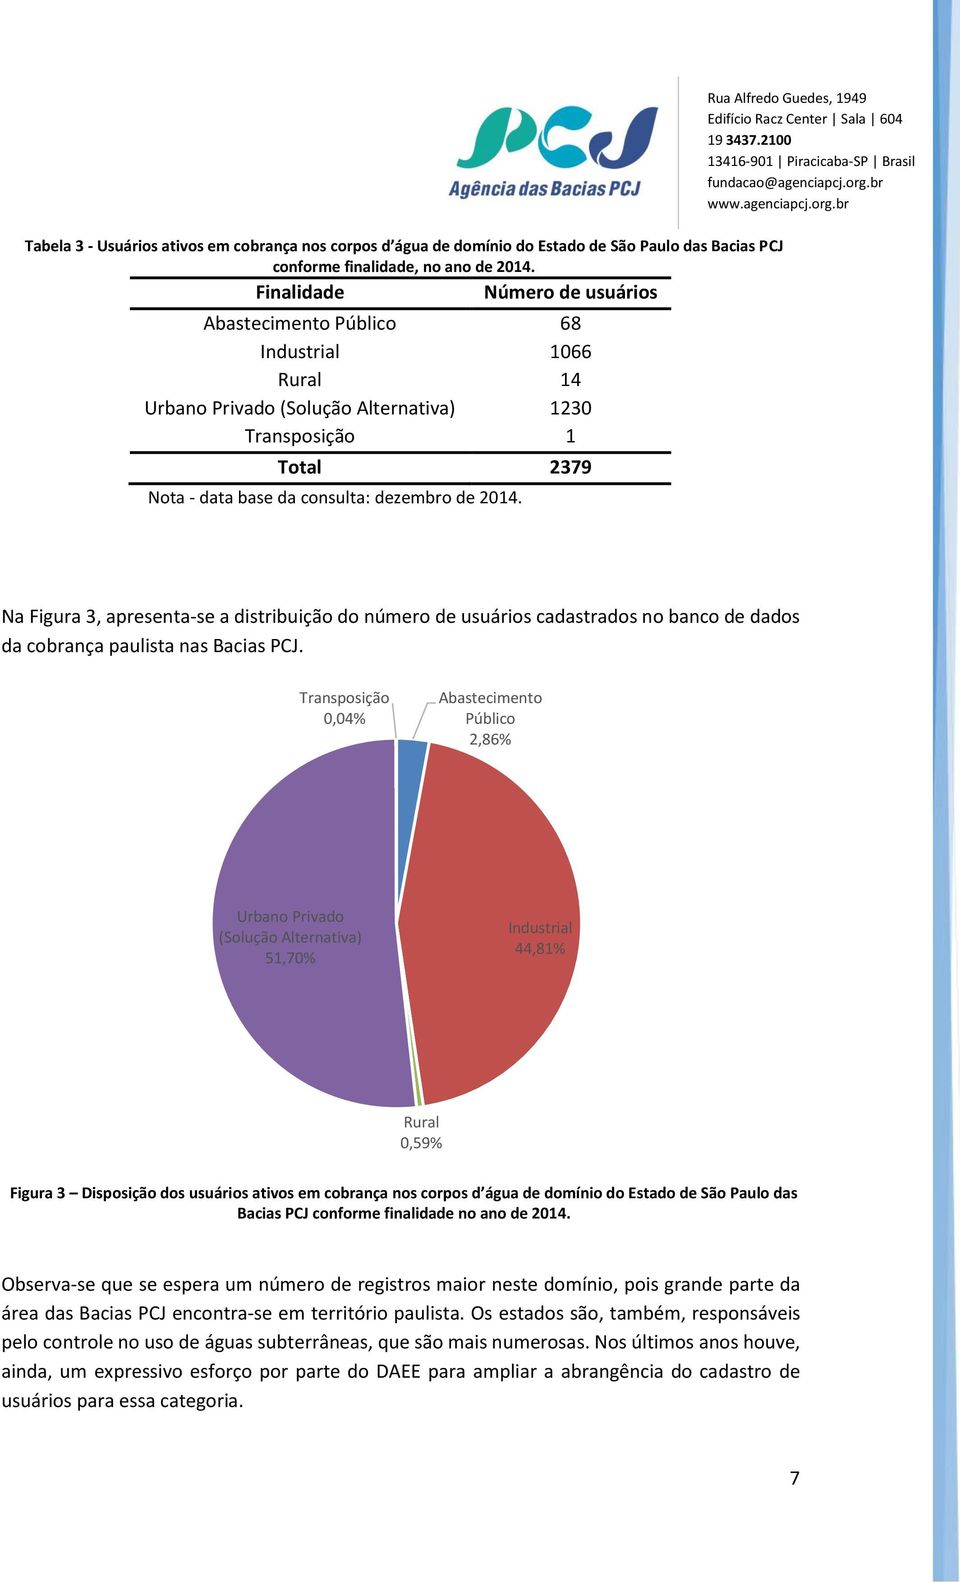 Na Figura 3, apresenta-se a distribuição do número de usuários cadastrados no banco de dados da cobrança paulista nas Bacias PCJ.